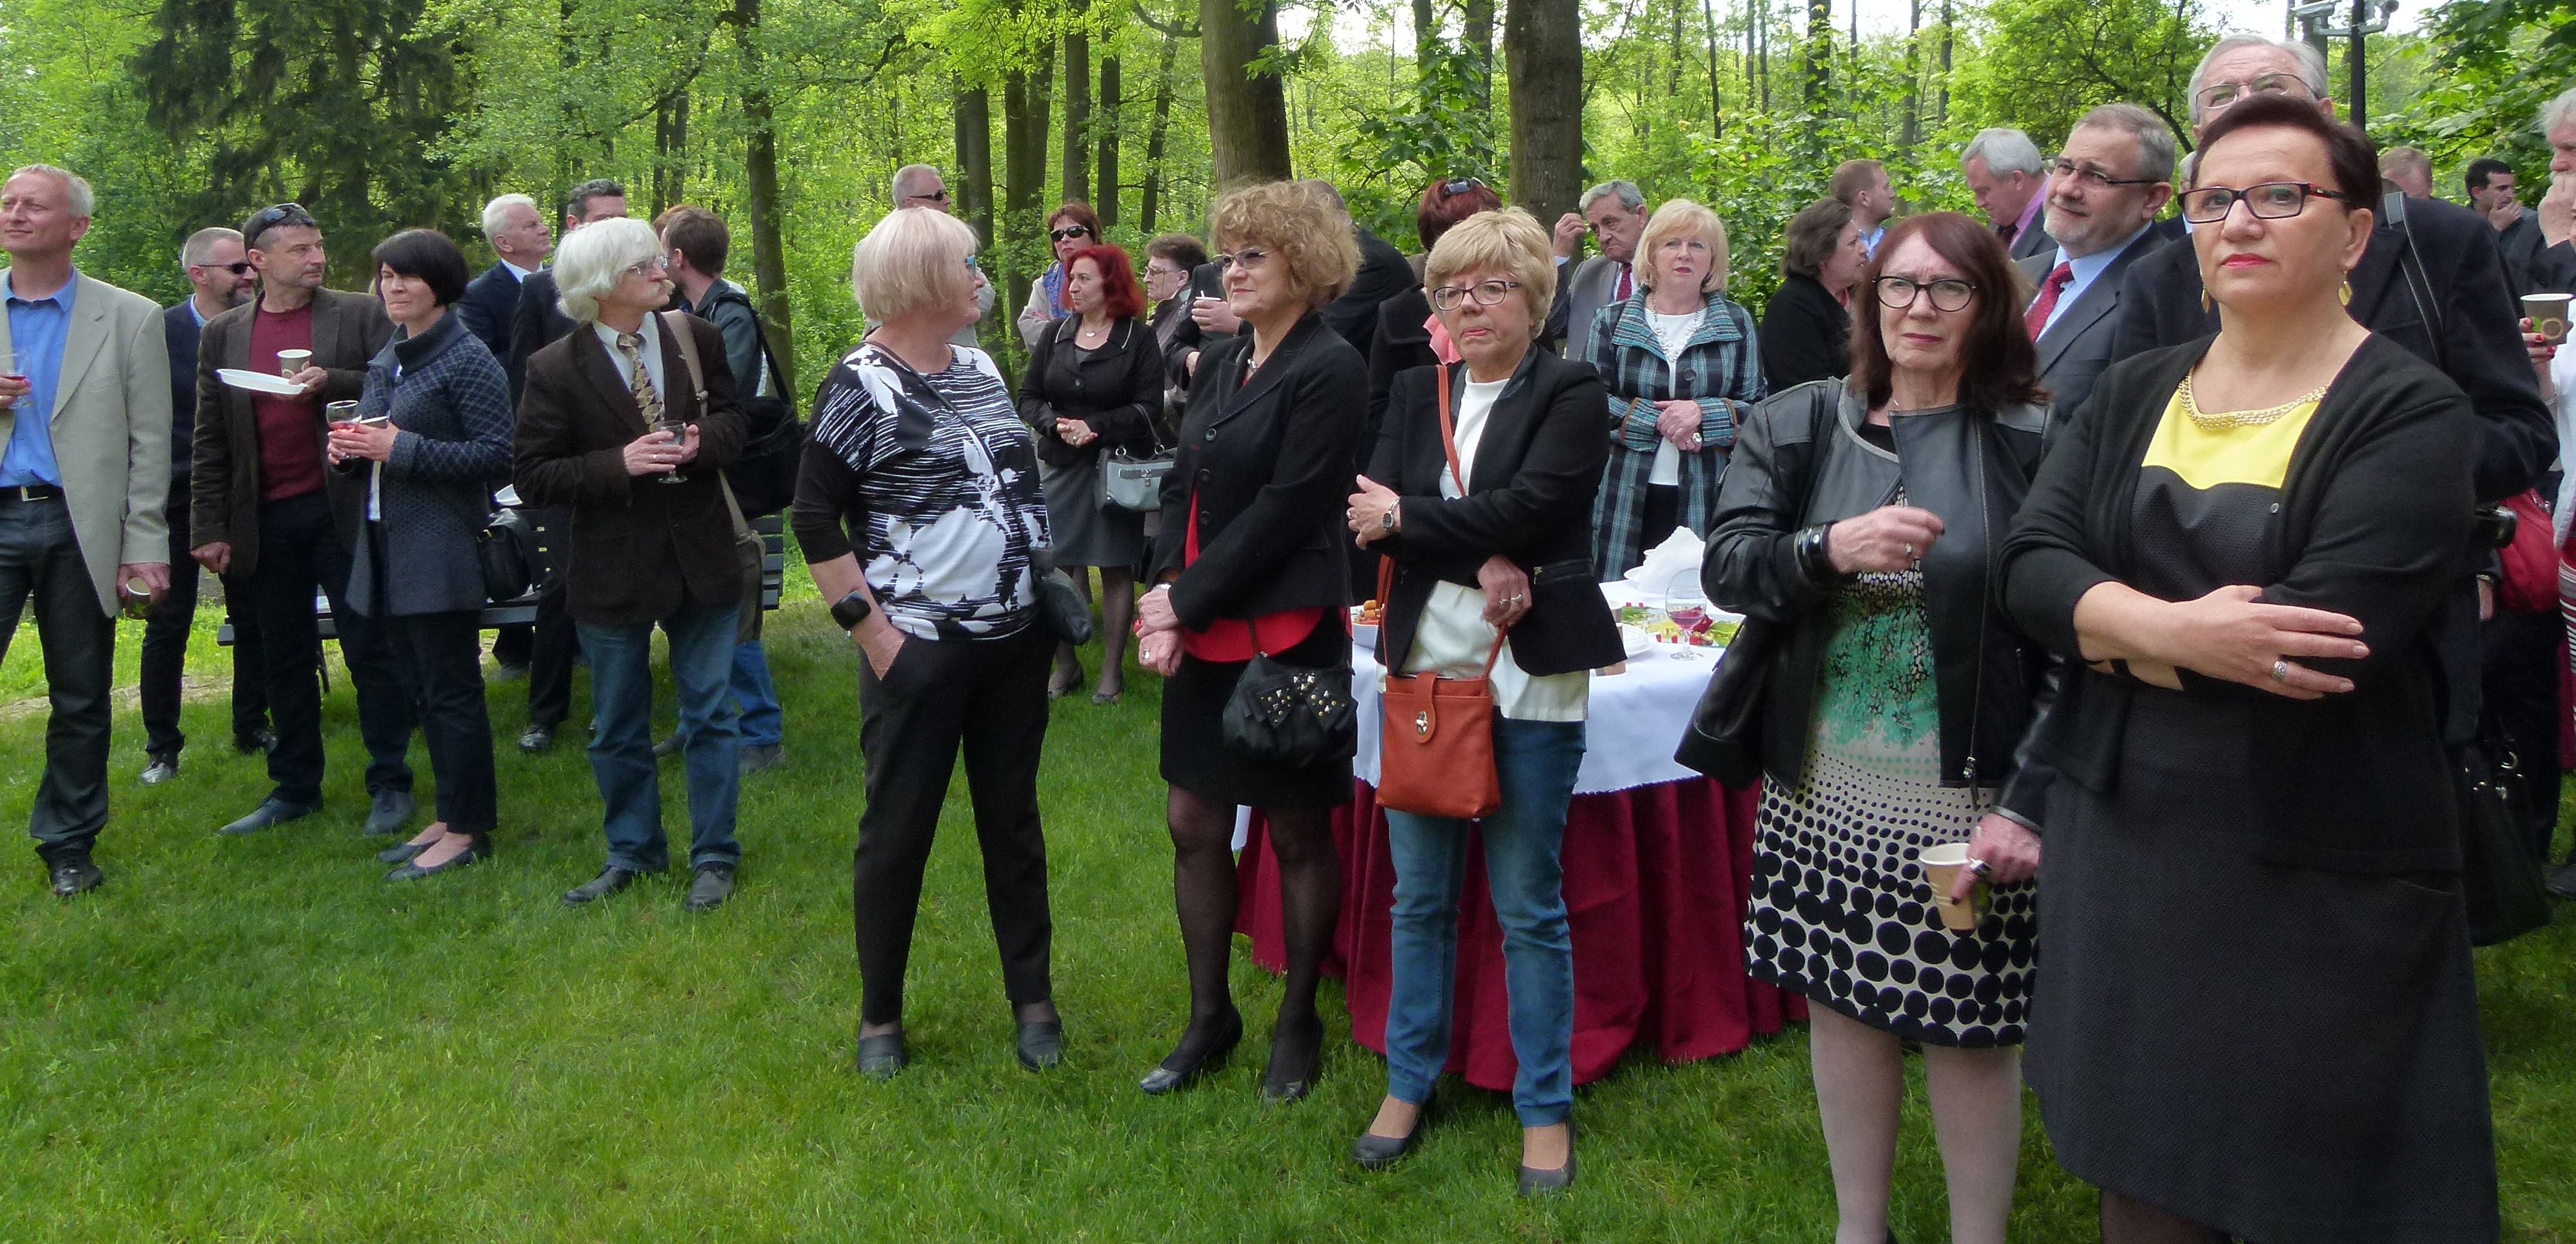 Tłumy gości na otwarciu dworu Orpiszewskich w Kłóbce- zdjęcia i wideo